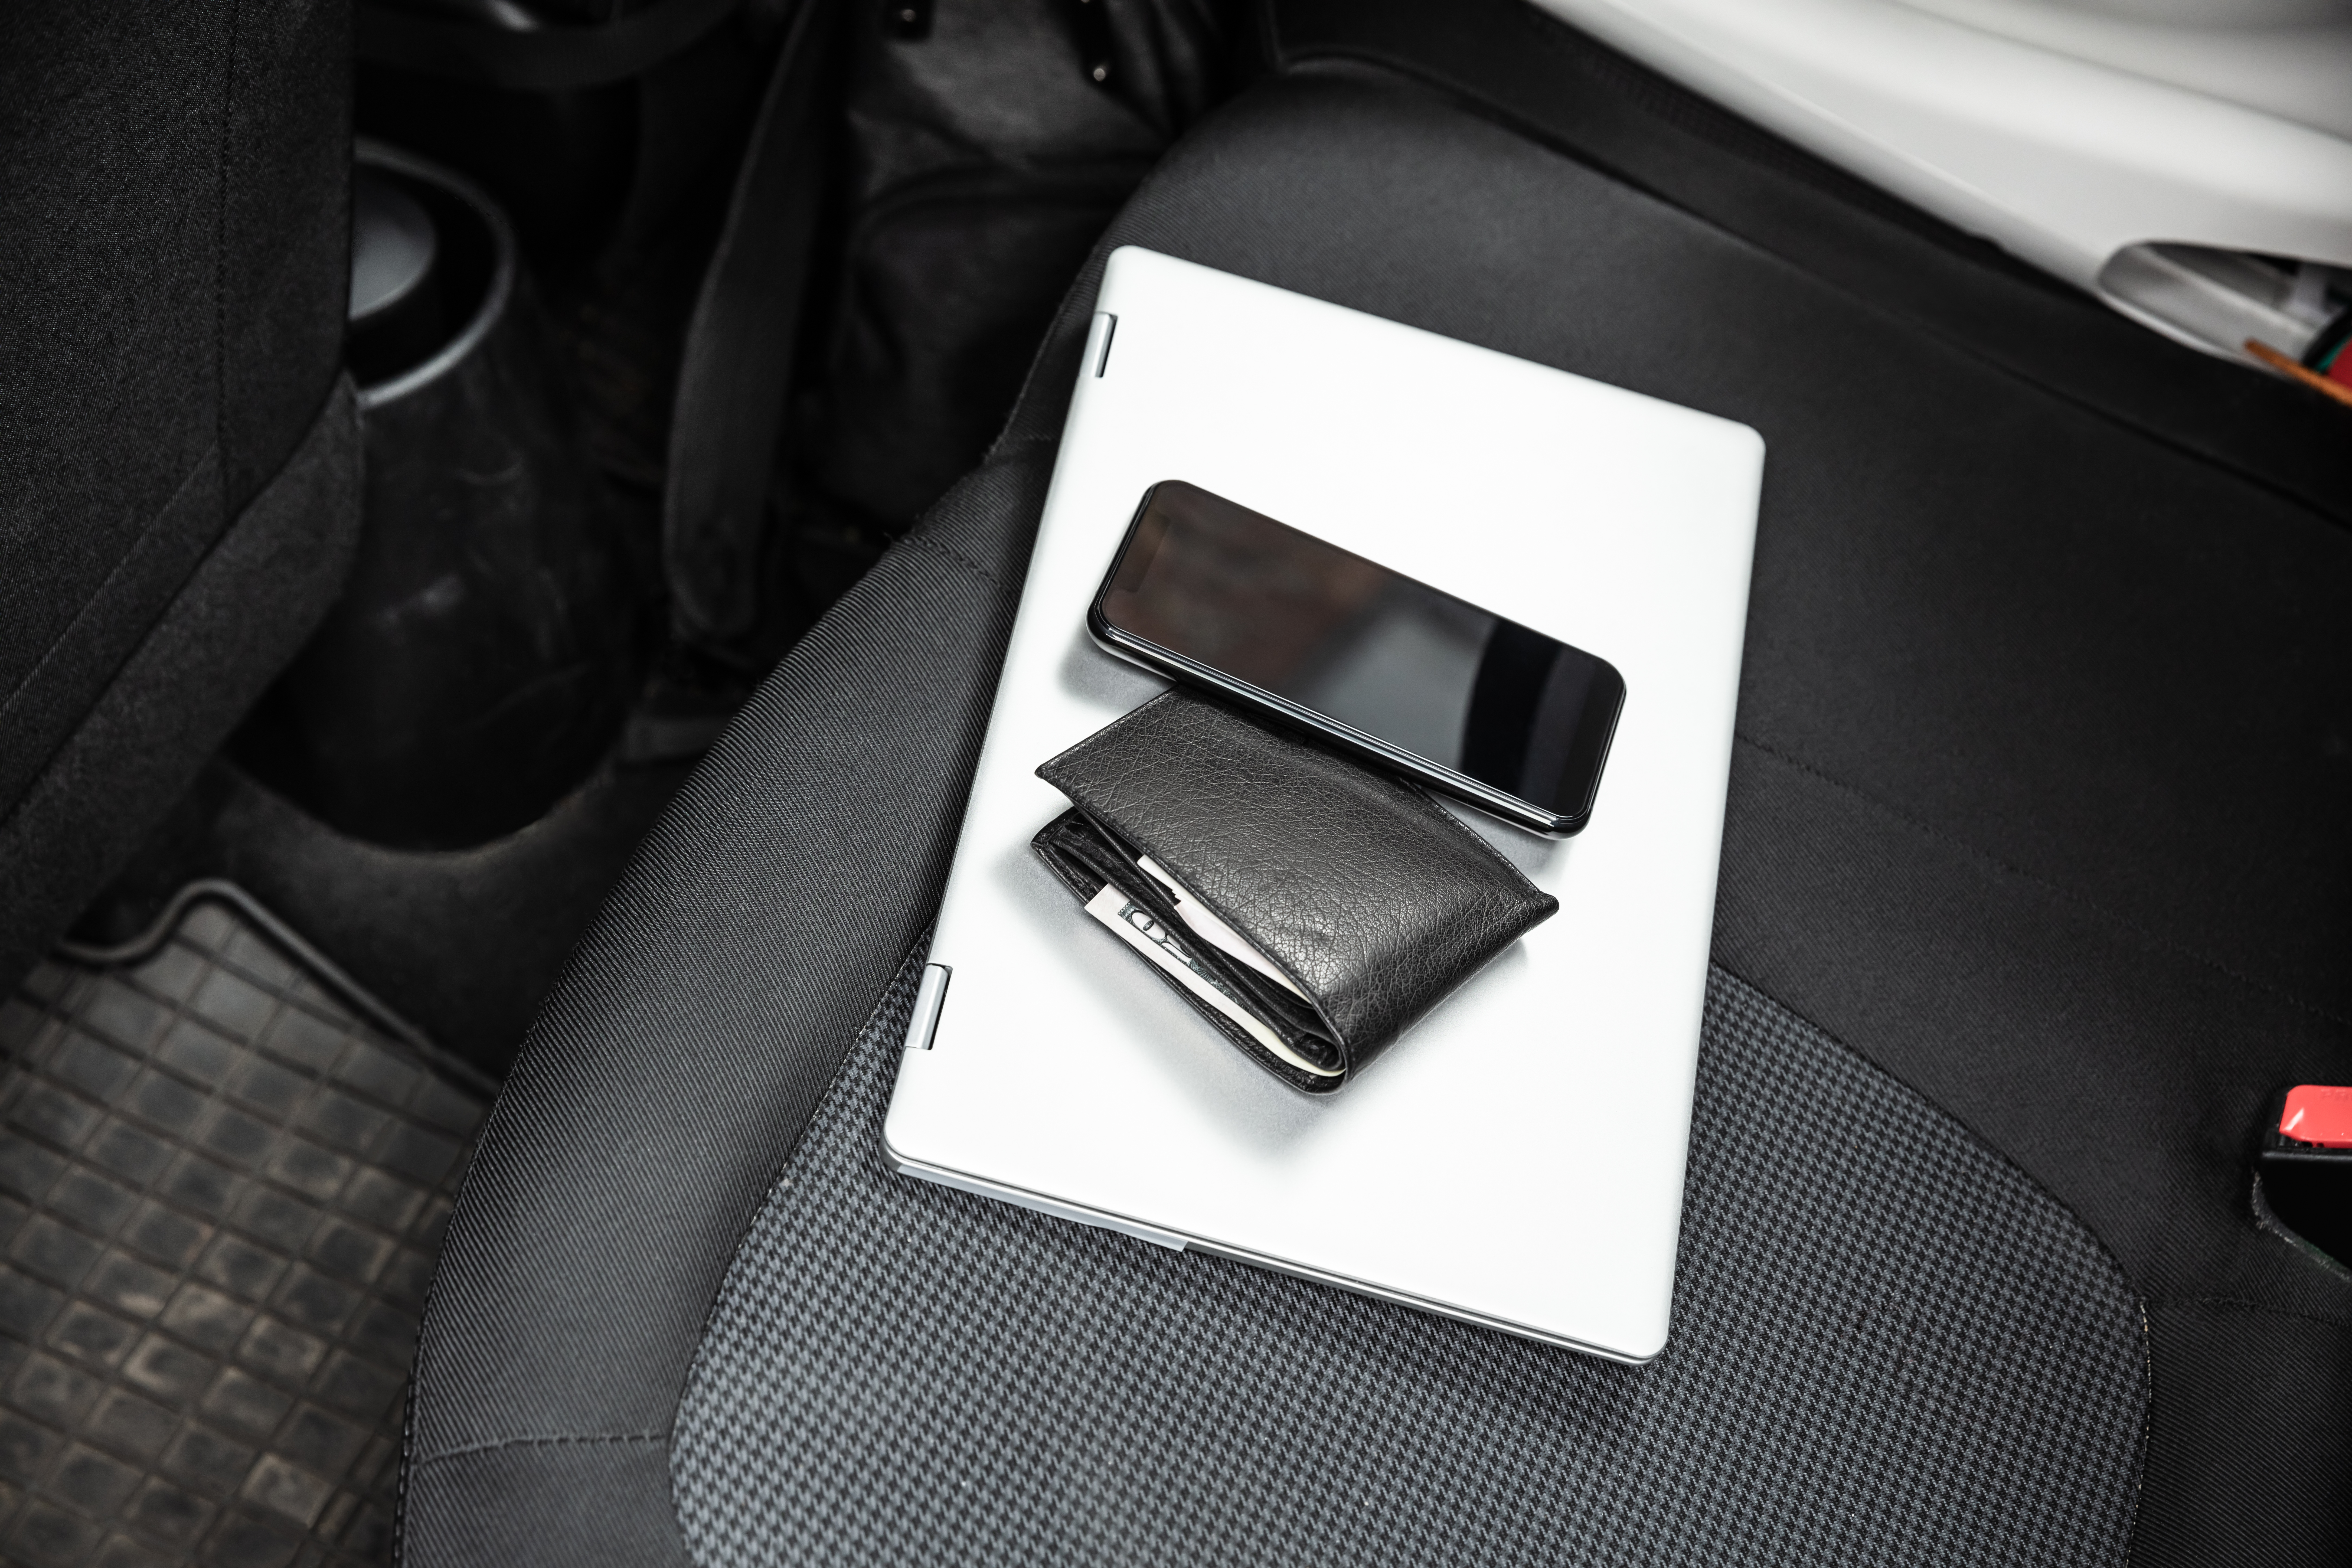 Effets personnels laissés sur le siège arrière d'une voiture | Source : Shutterstock